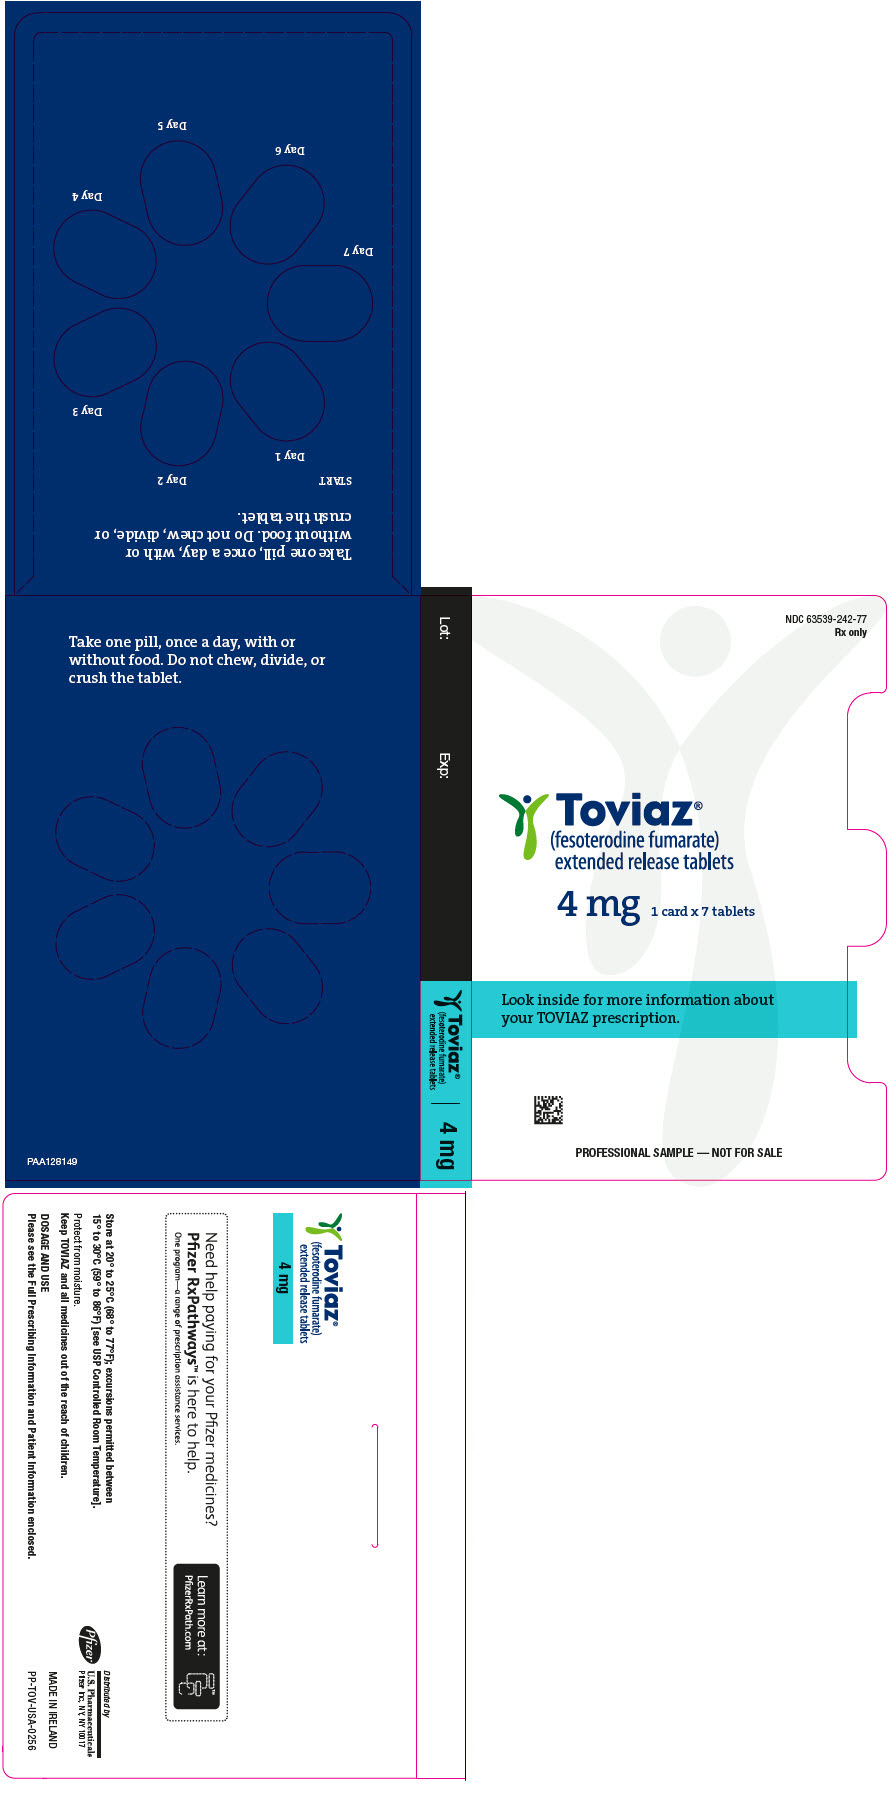 PRINCIPAL DISPLAY PANEL - 4 mg Tablet Blister Pack - PAA128149